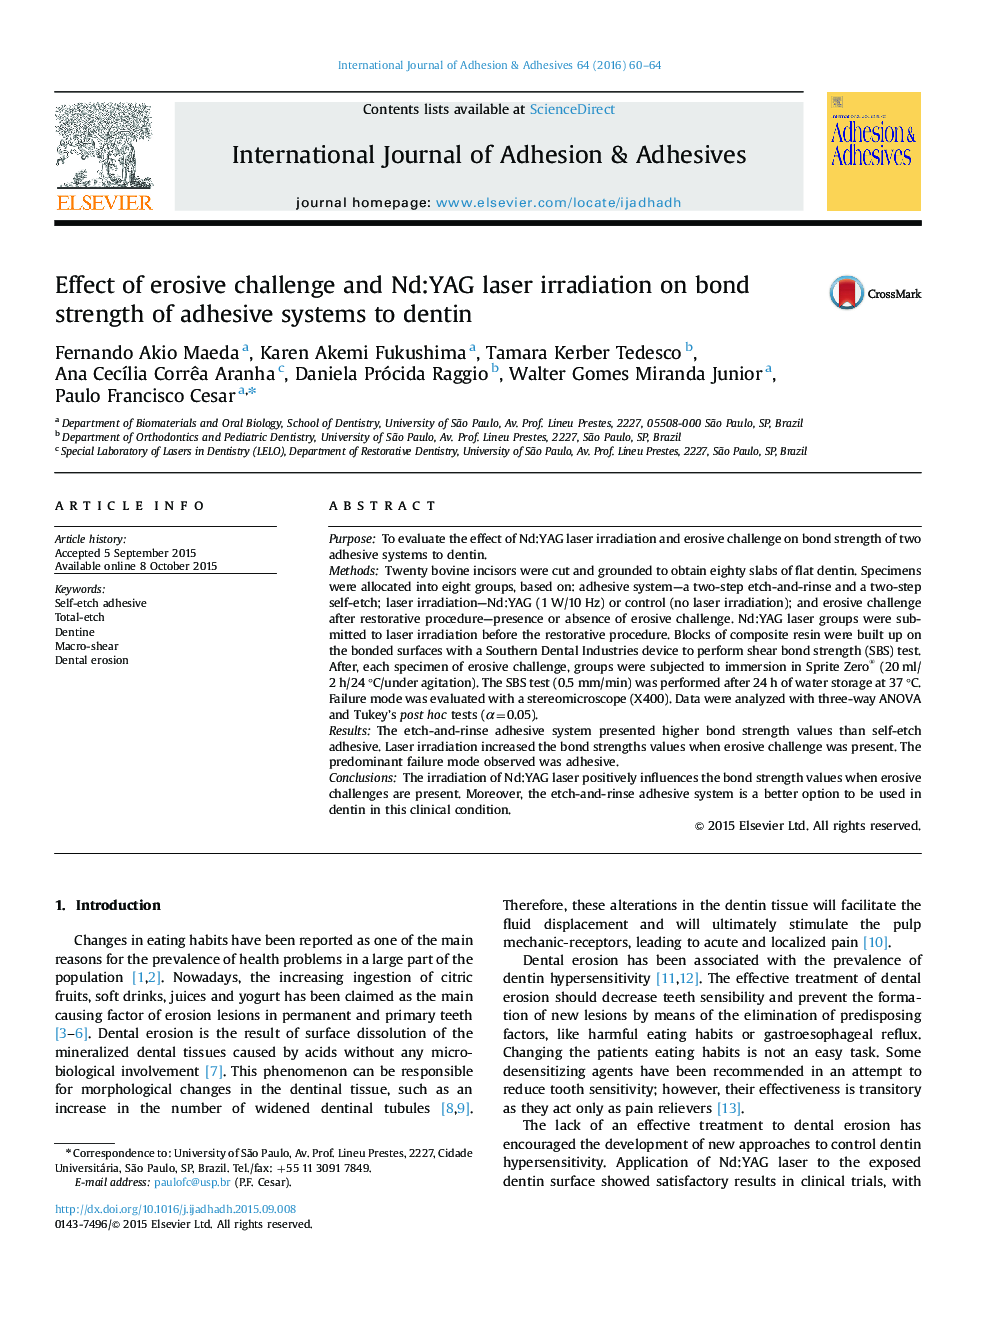 اثر چالش فرسایشی و تابش Nd: YAG لیزر بر مقاومت باند سیستم های چسبنده به دنتین